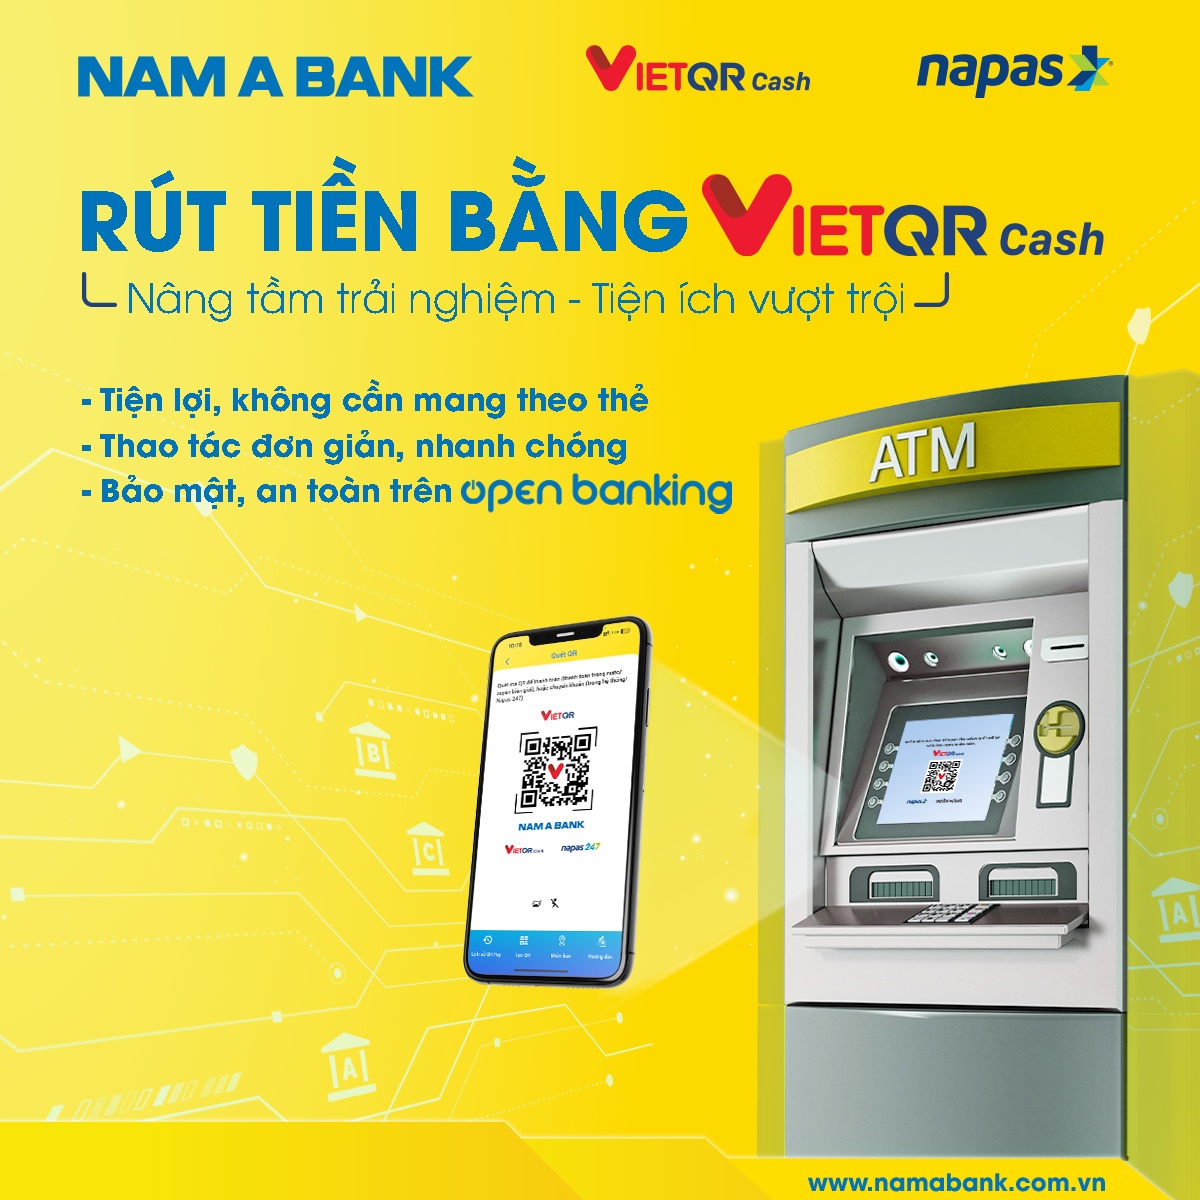 Dịch vụ VietQRCash đánh dấu bước phát triển mới trong hành trình số hóa các sản phẩm, dịch vụ thanh toán của Nam A Bank.